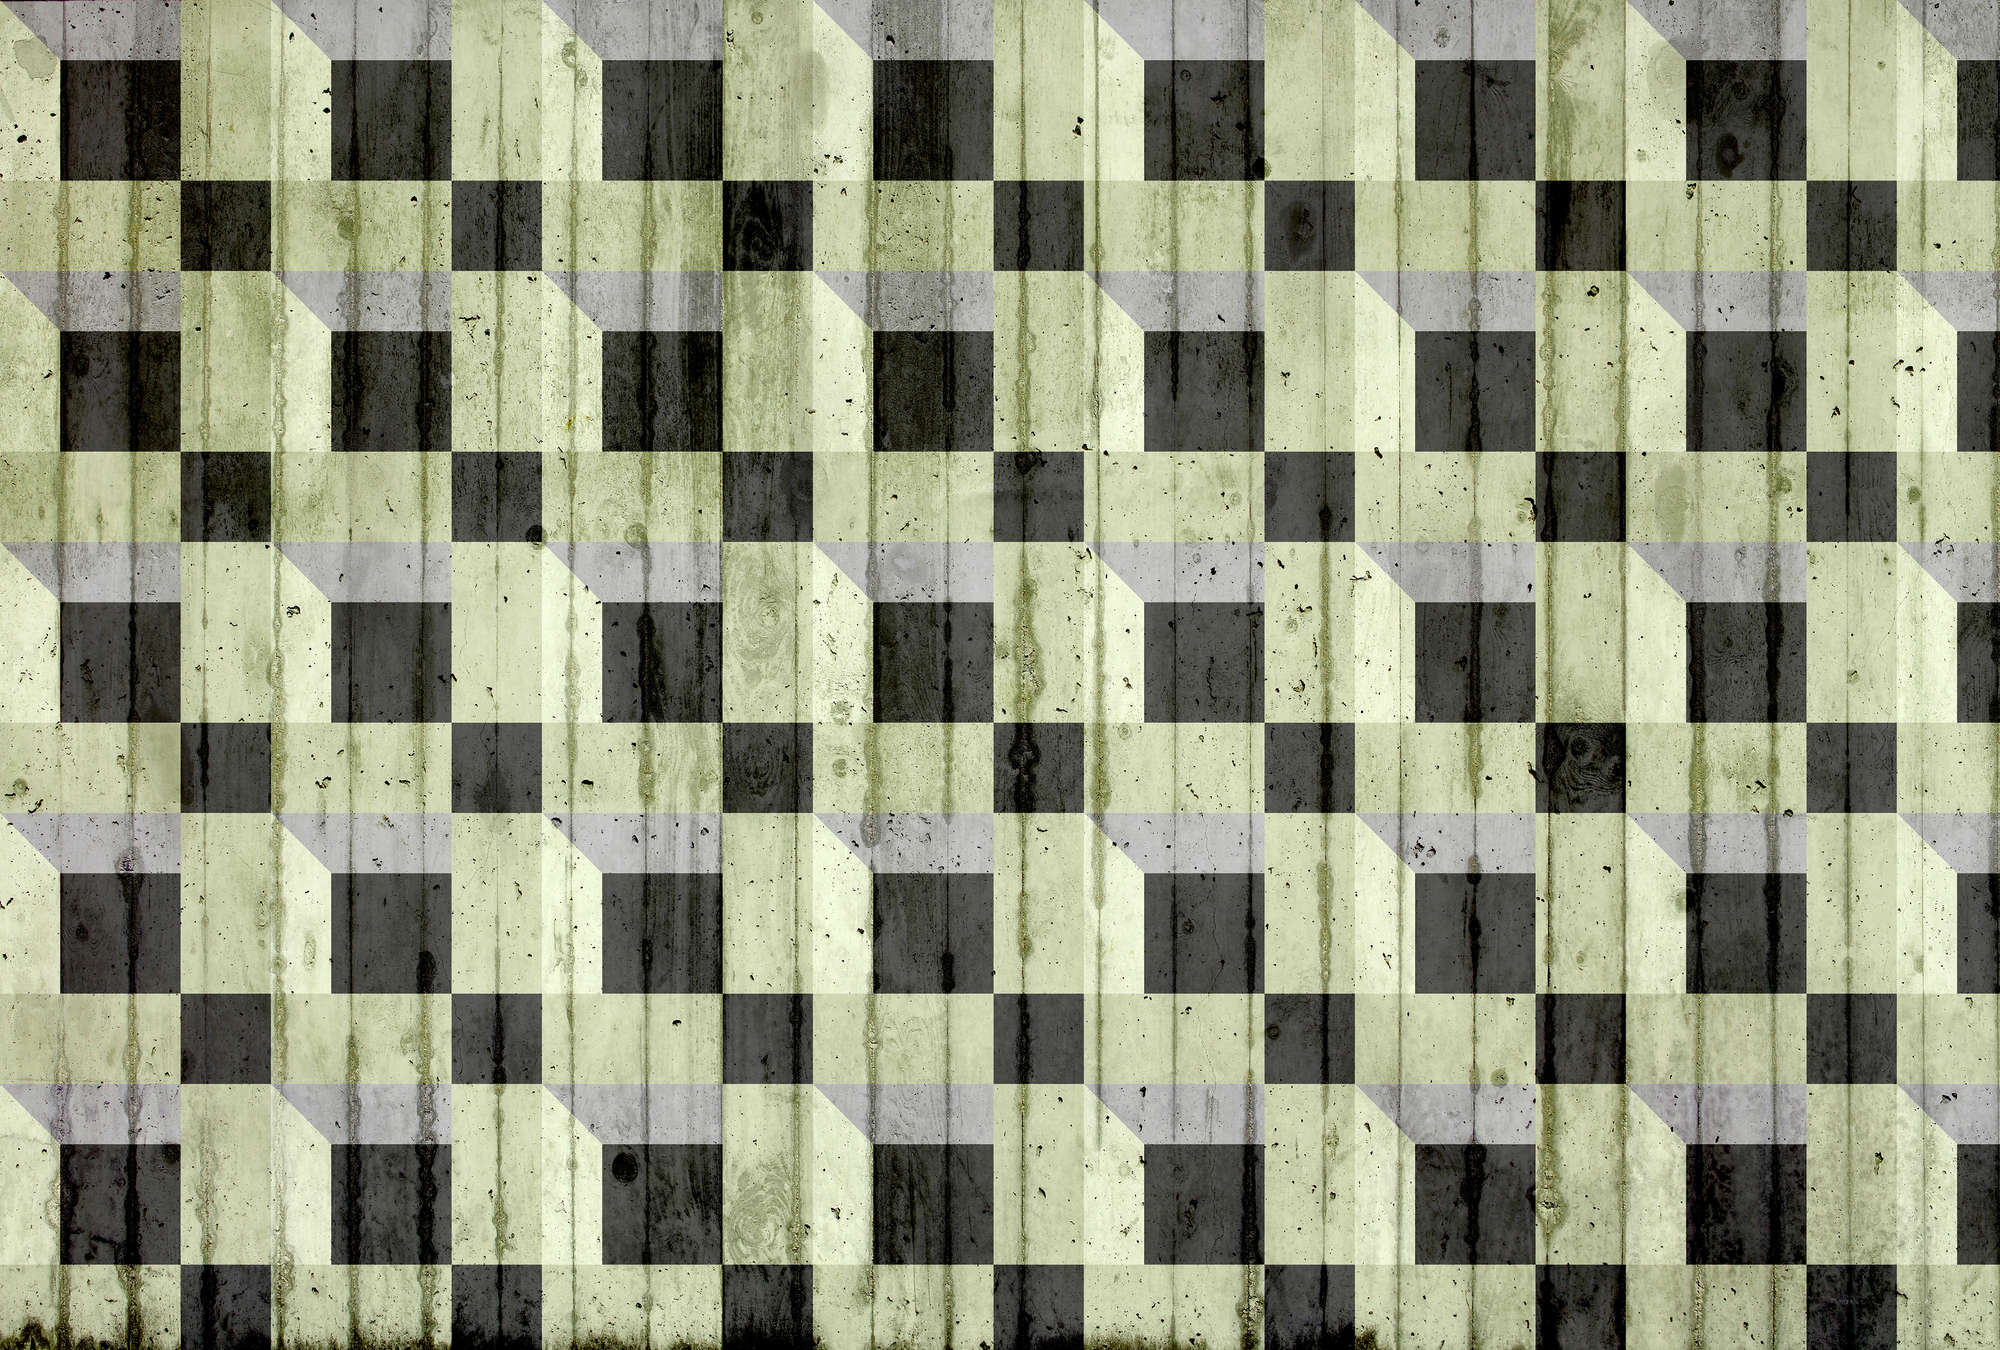             Papier peint panoramique imitation béton & motifs carrés - vert, noir, gris
        